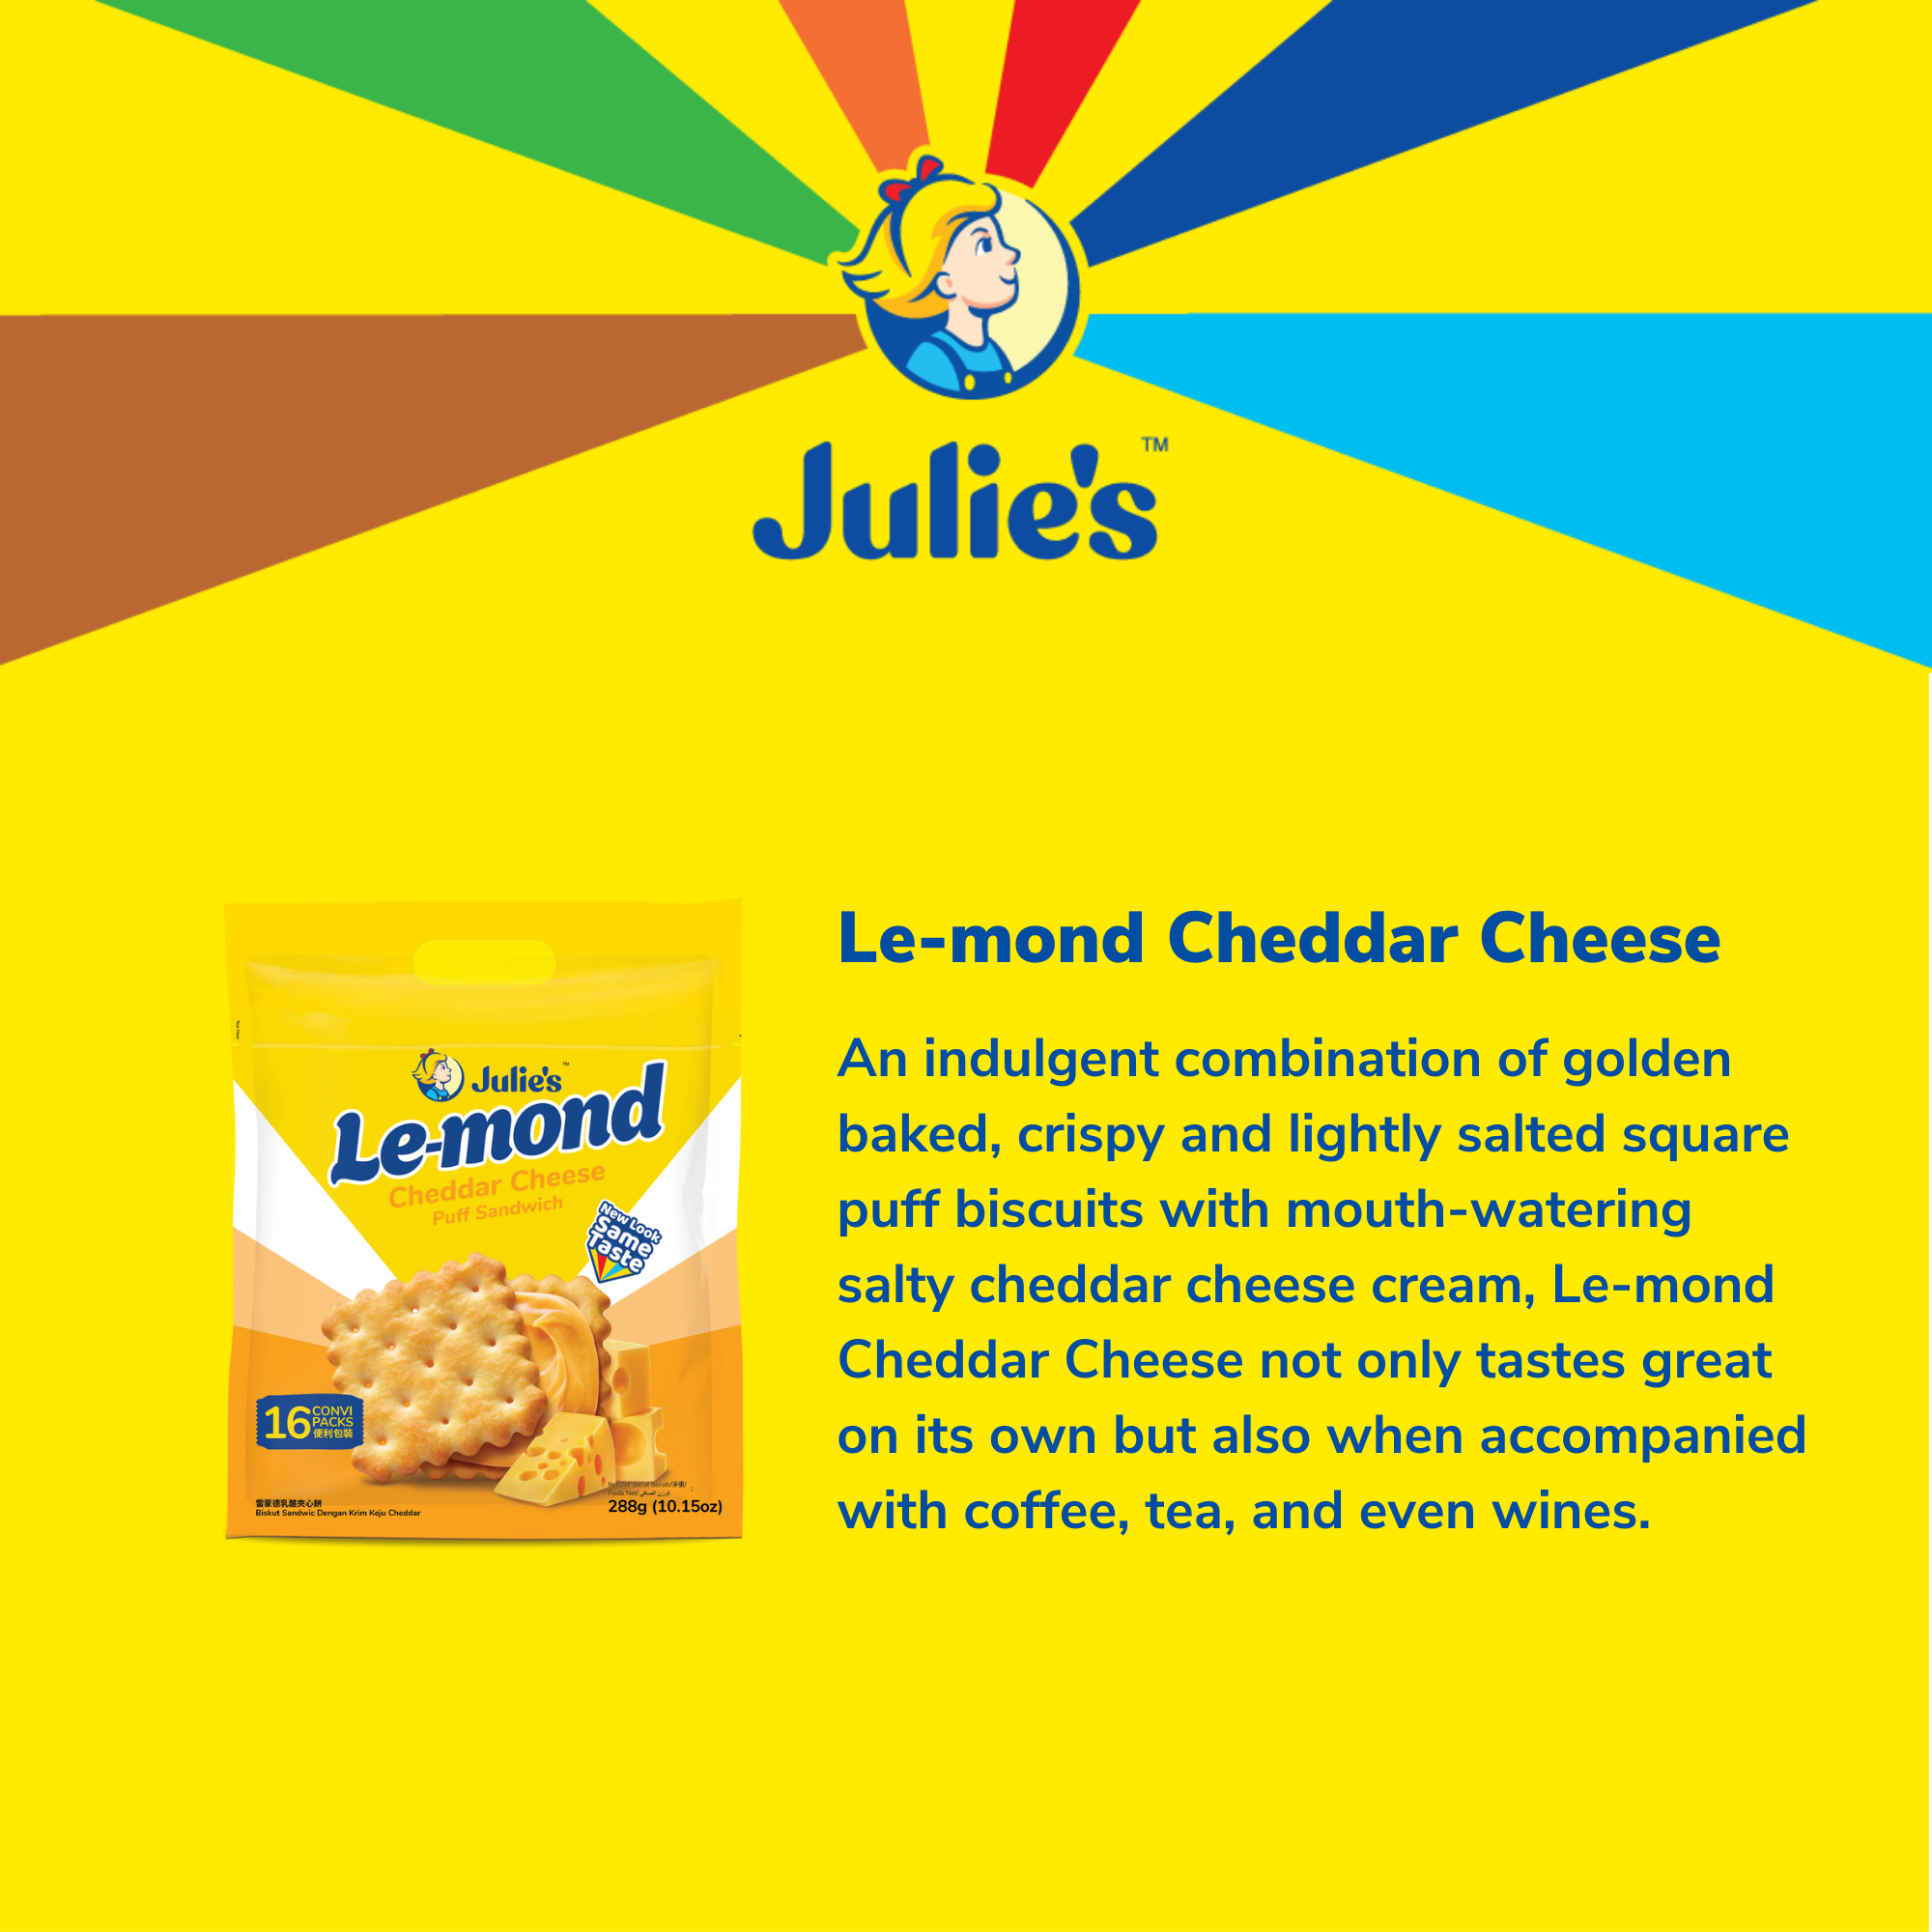 Julie's Le-mond Cheddar Cheese Puff Sandwich 288g x 3 packs